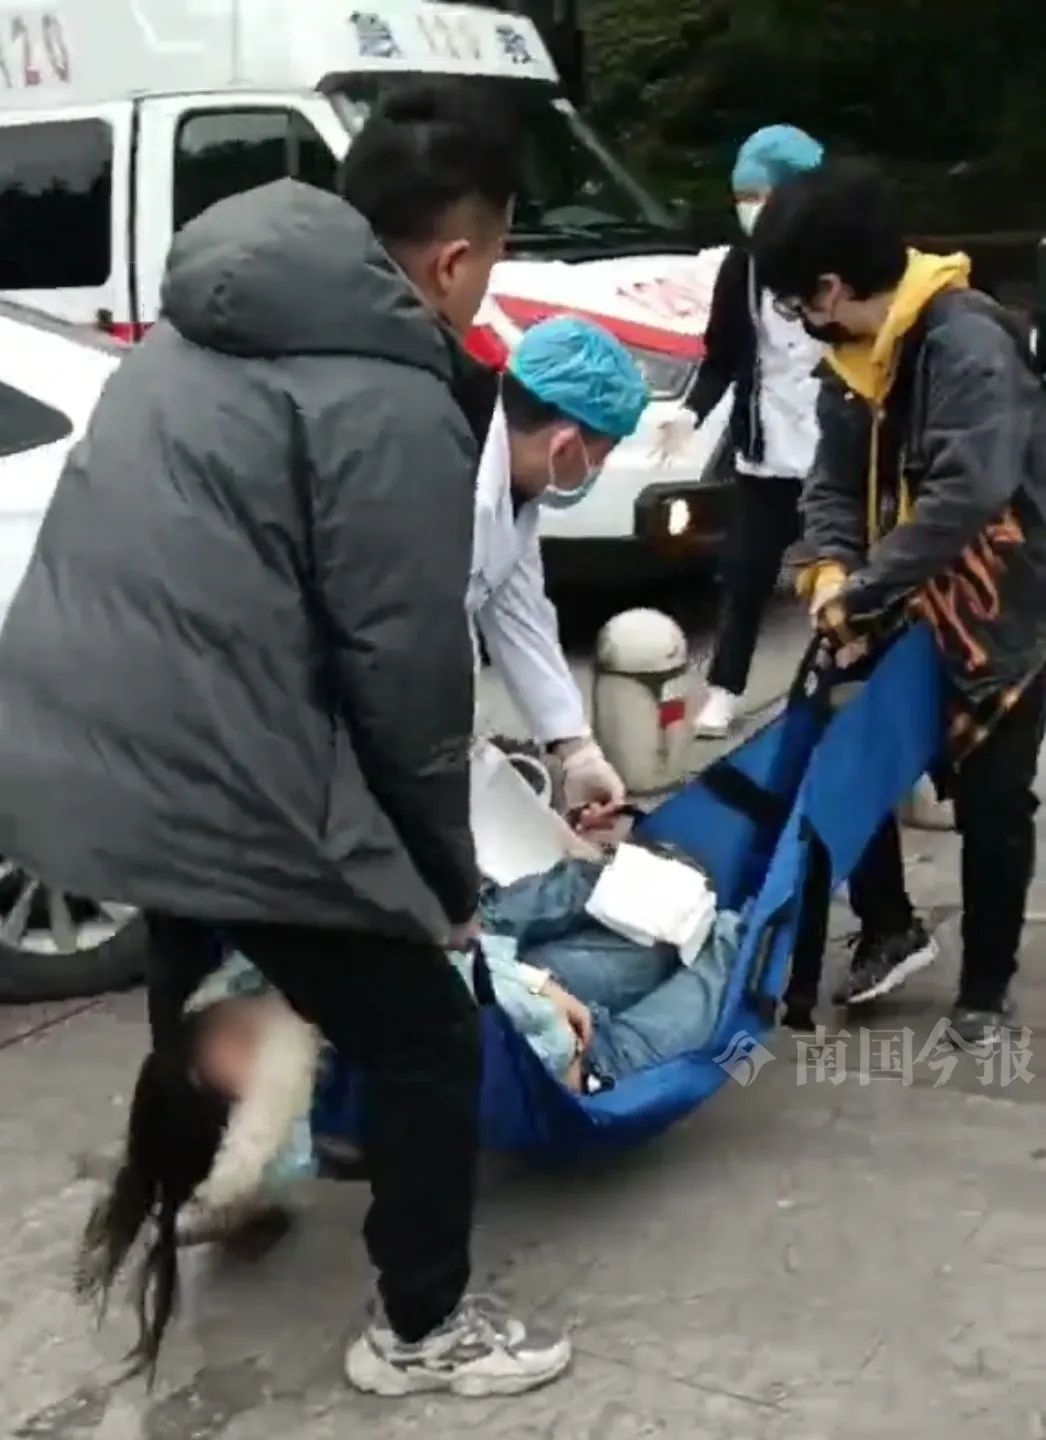 伤者被抬上救护车。视频截图